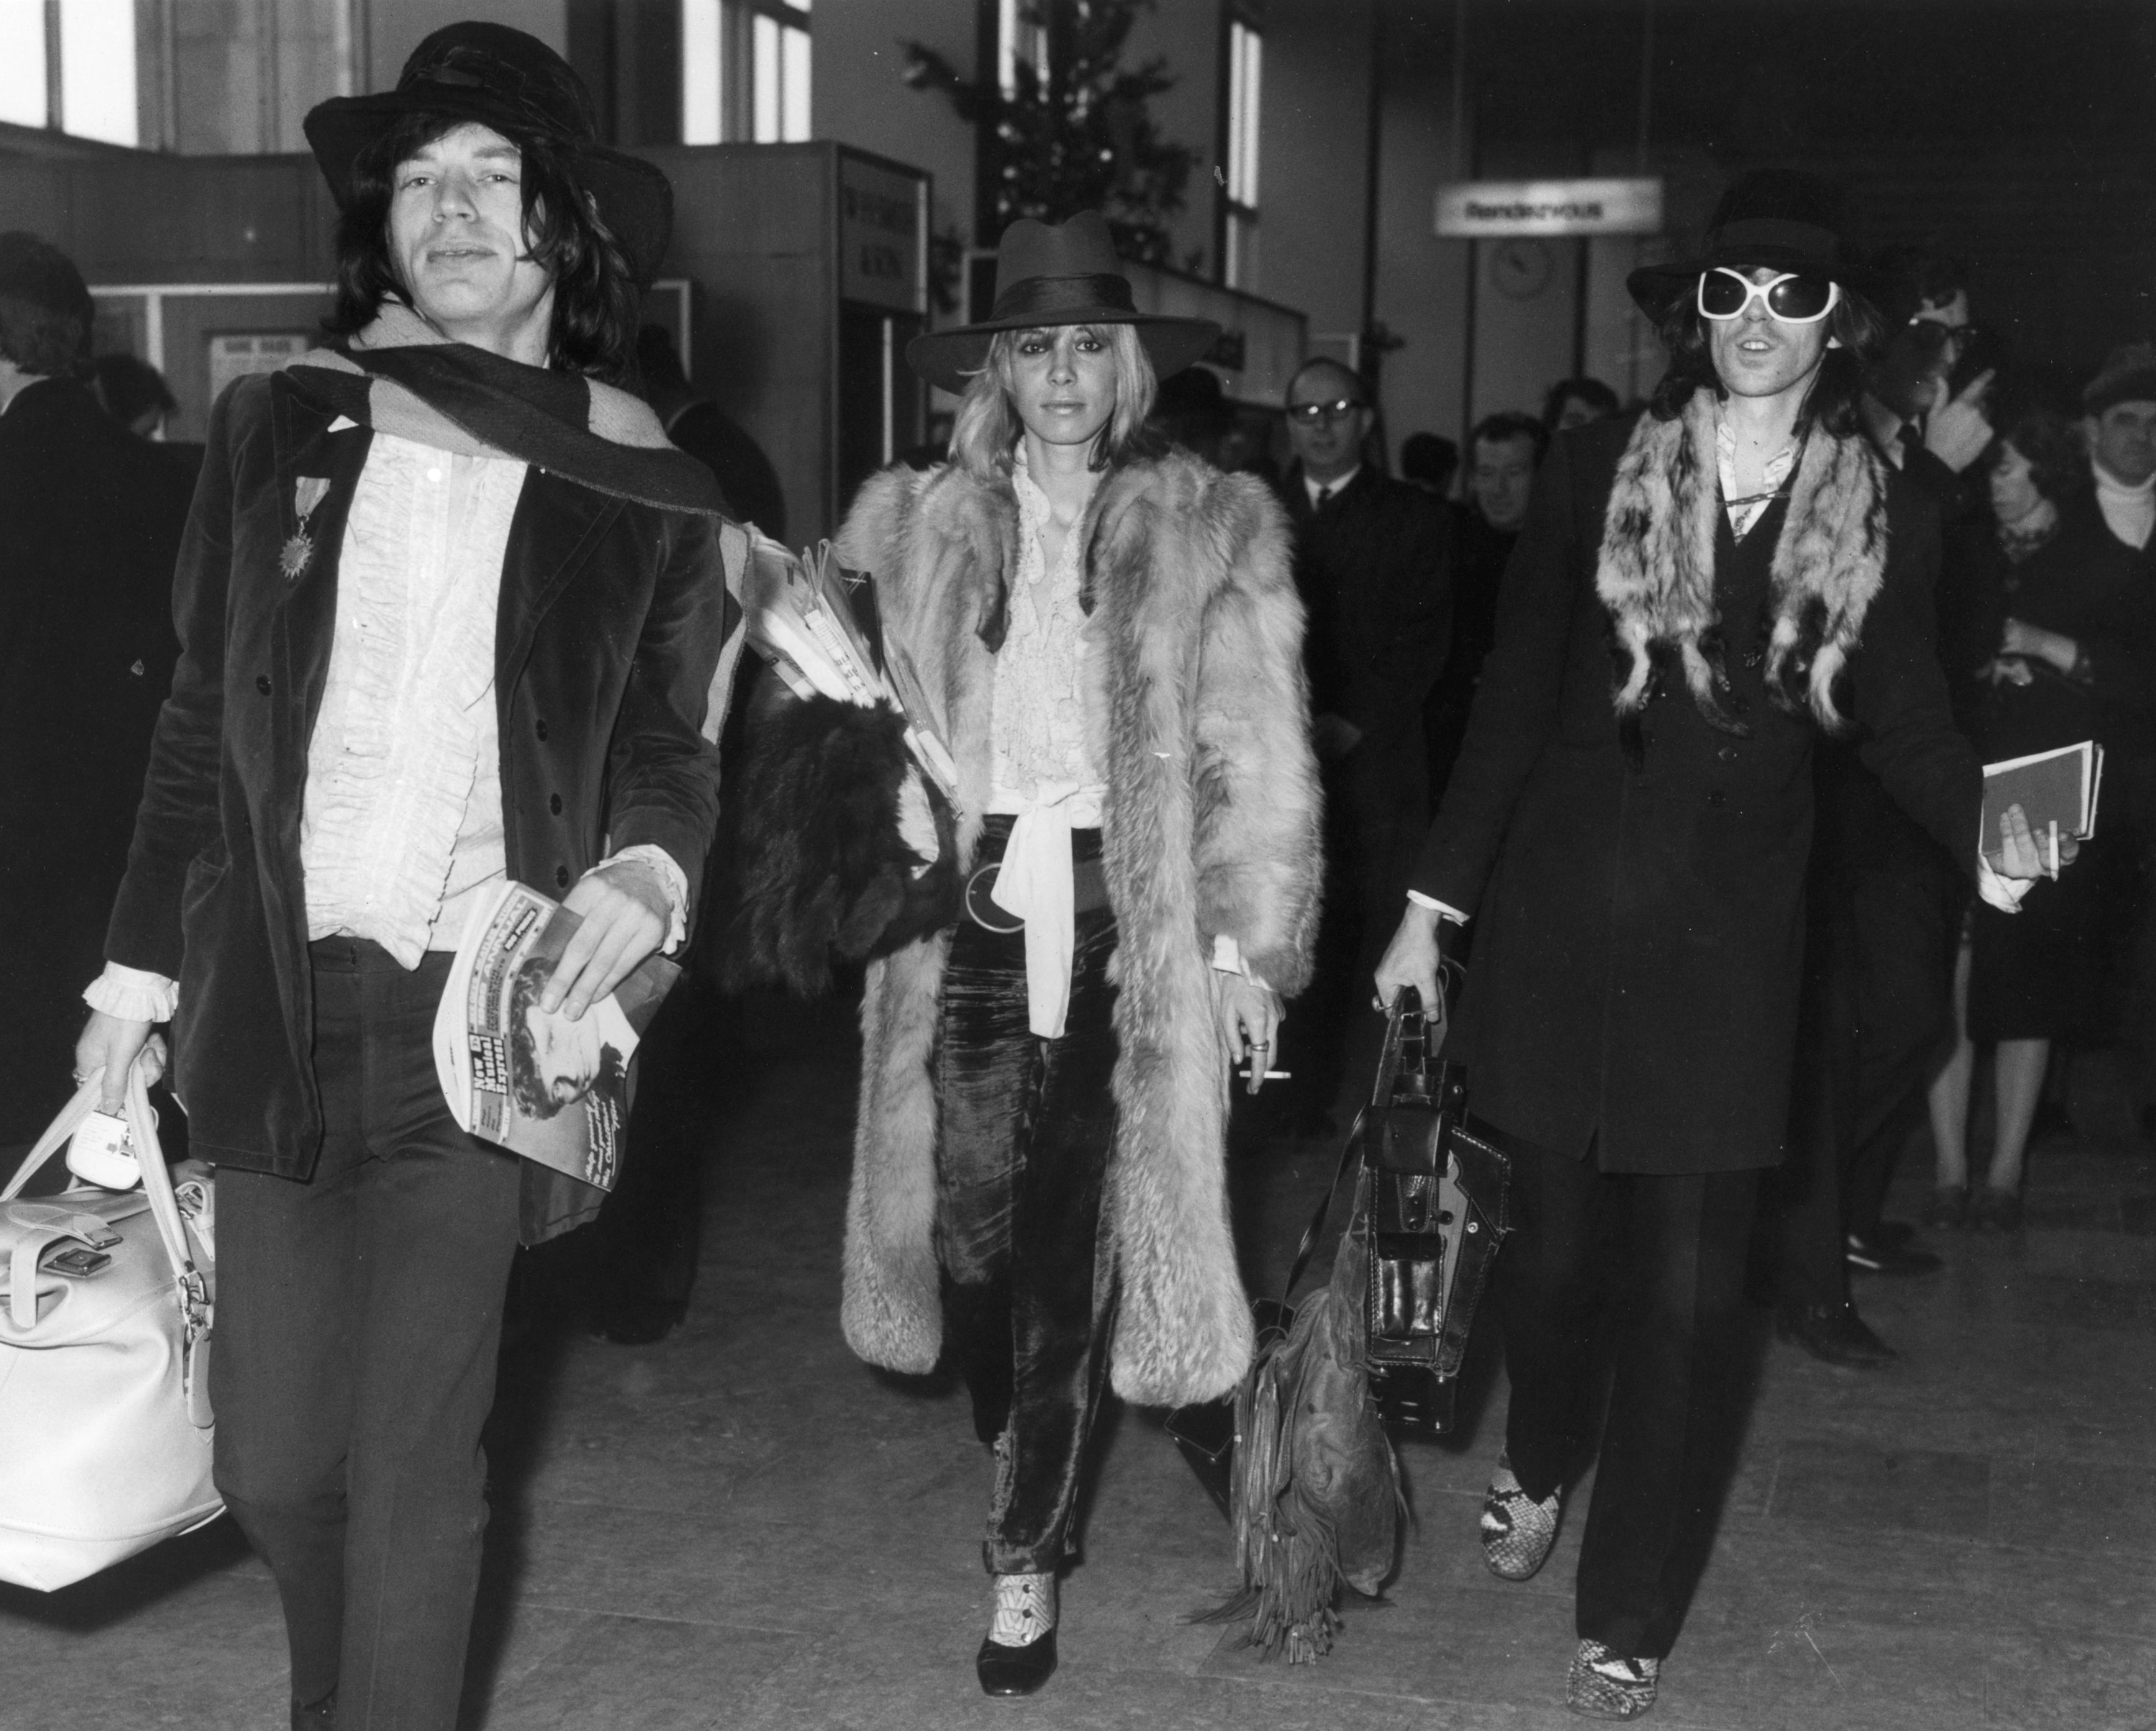 Dicembre 1968, Londra. Mick Jagger e Keith Richards partono con la compagna di quest'ultimo, Anita Pallenberg, già amante di Brian Jones. Per lei i Rolling Stones scriveranno il brano "Angie"